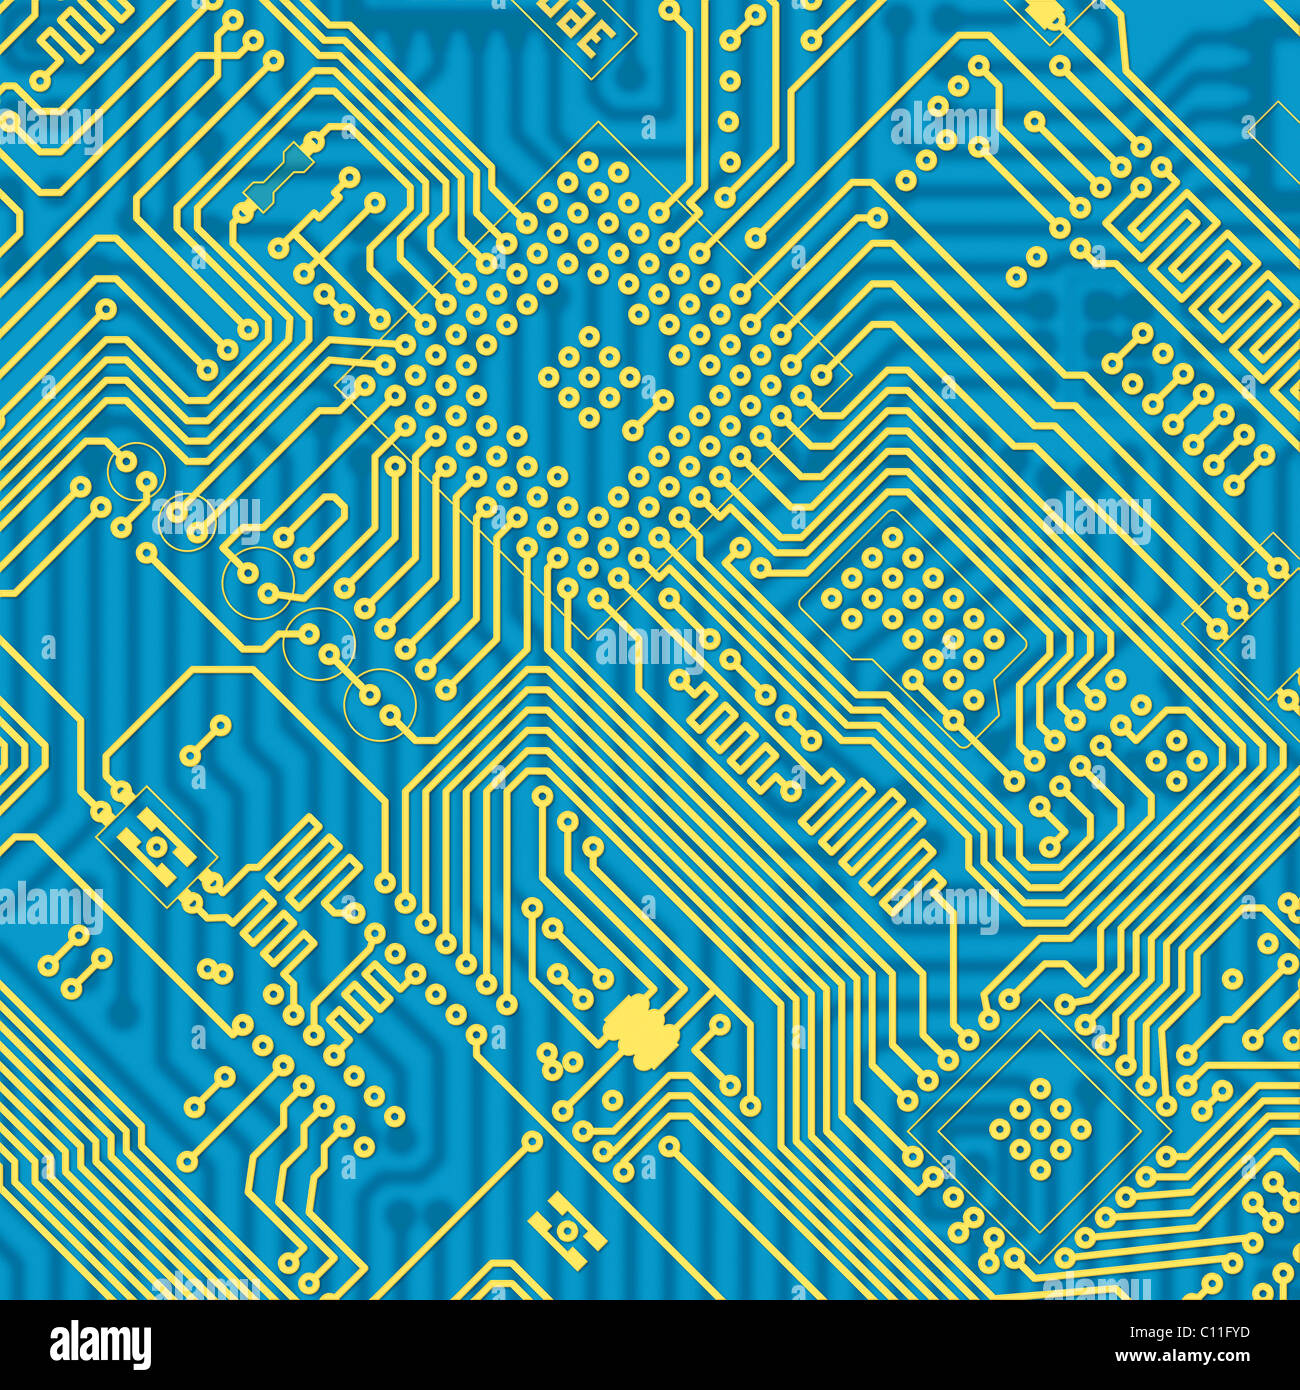 Carte de circuits imprimés industriels texture bleu Banque D'Images